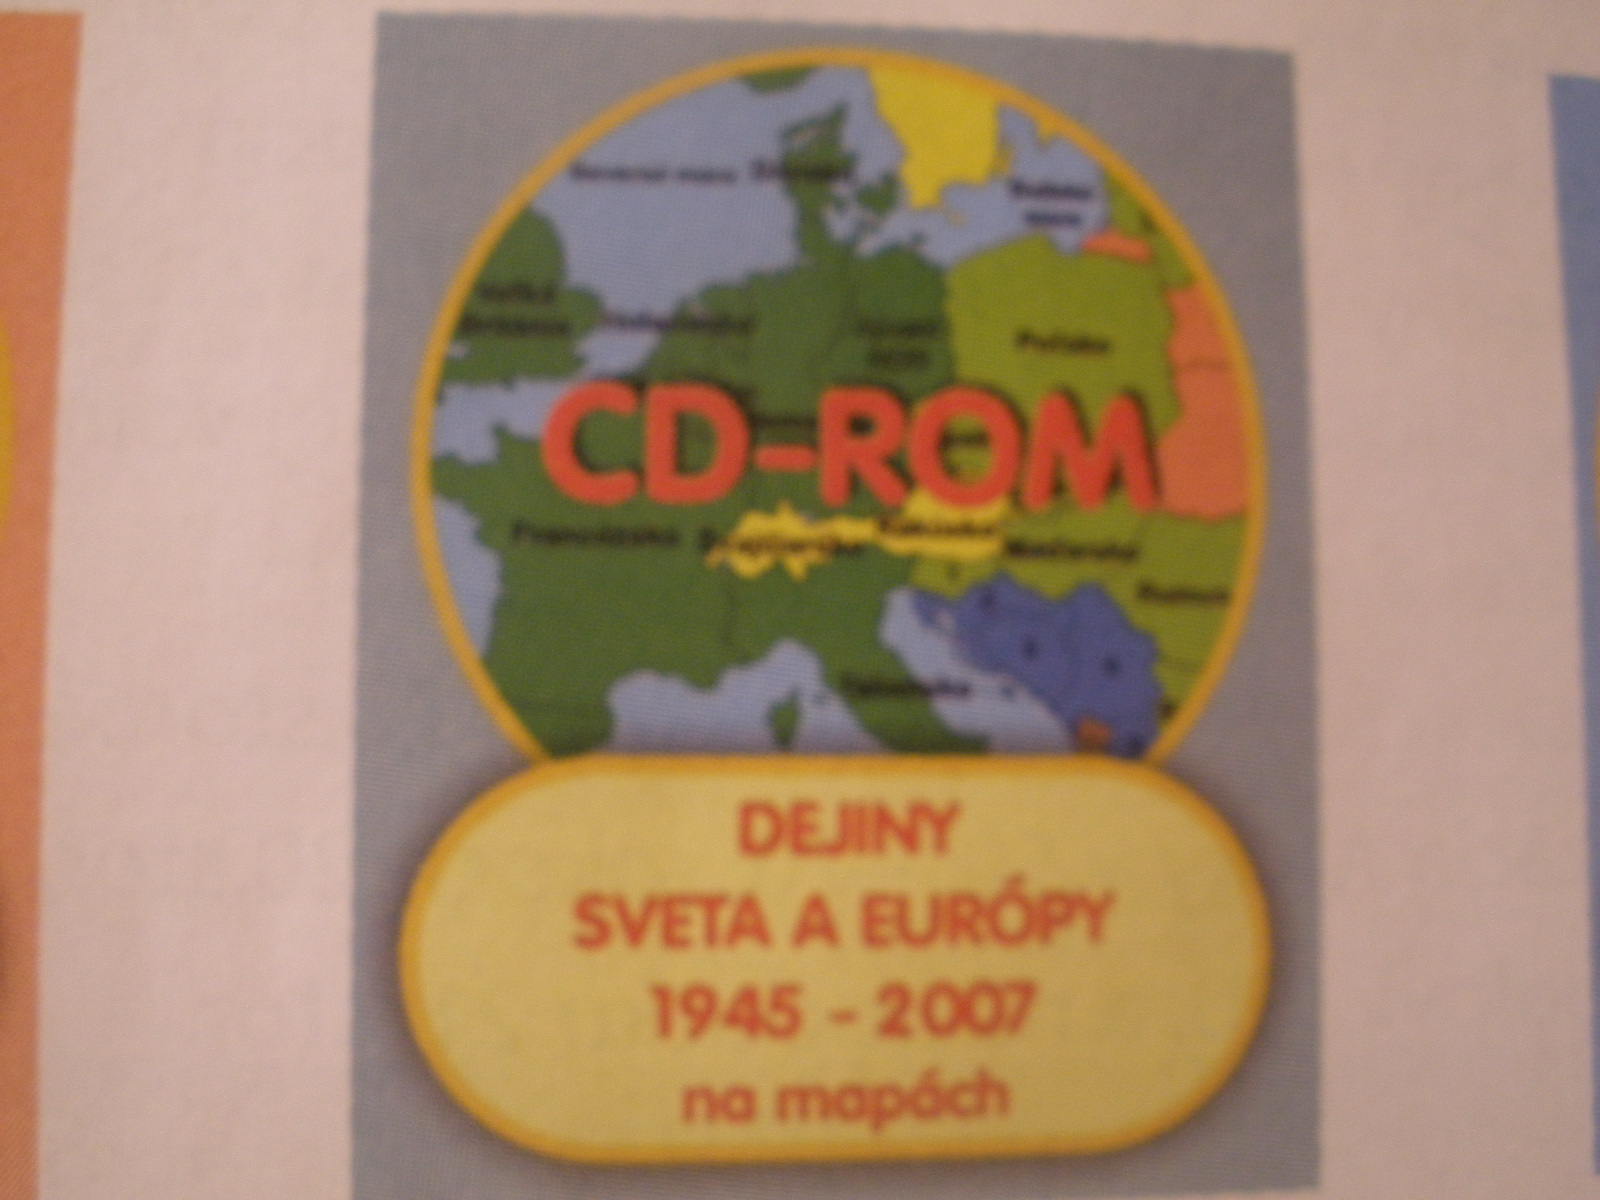 Dejiny Sveta a Európy v 20.stor. na mapách II. (1945-2007)